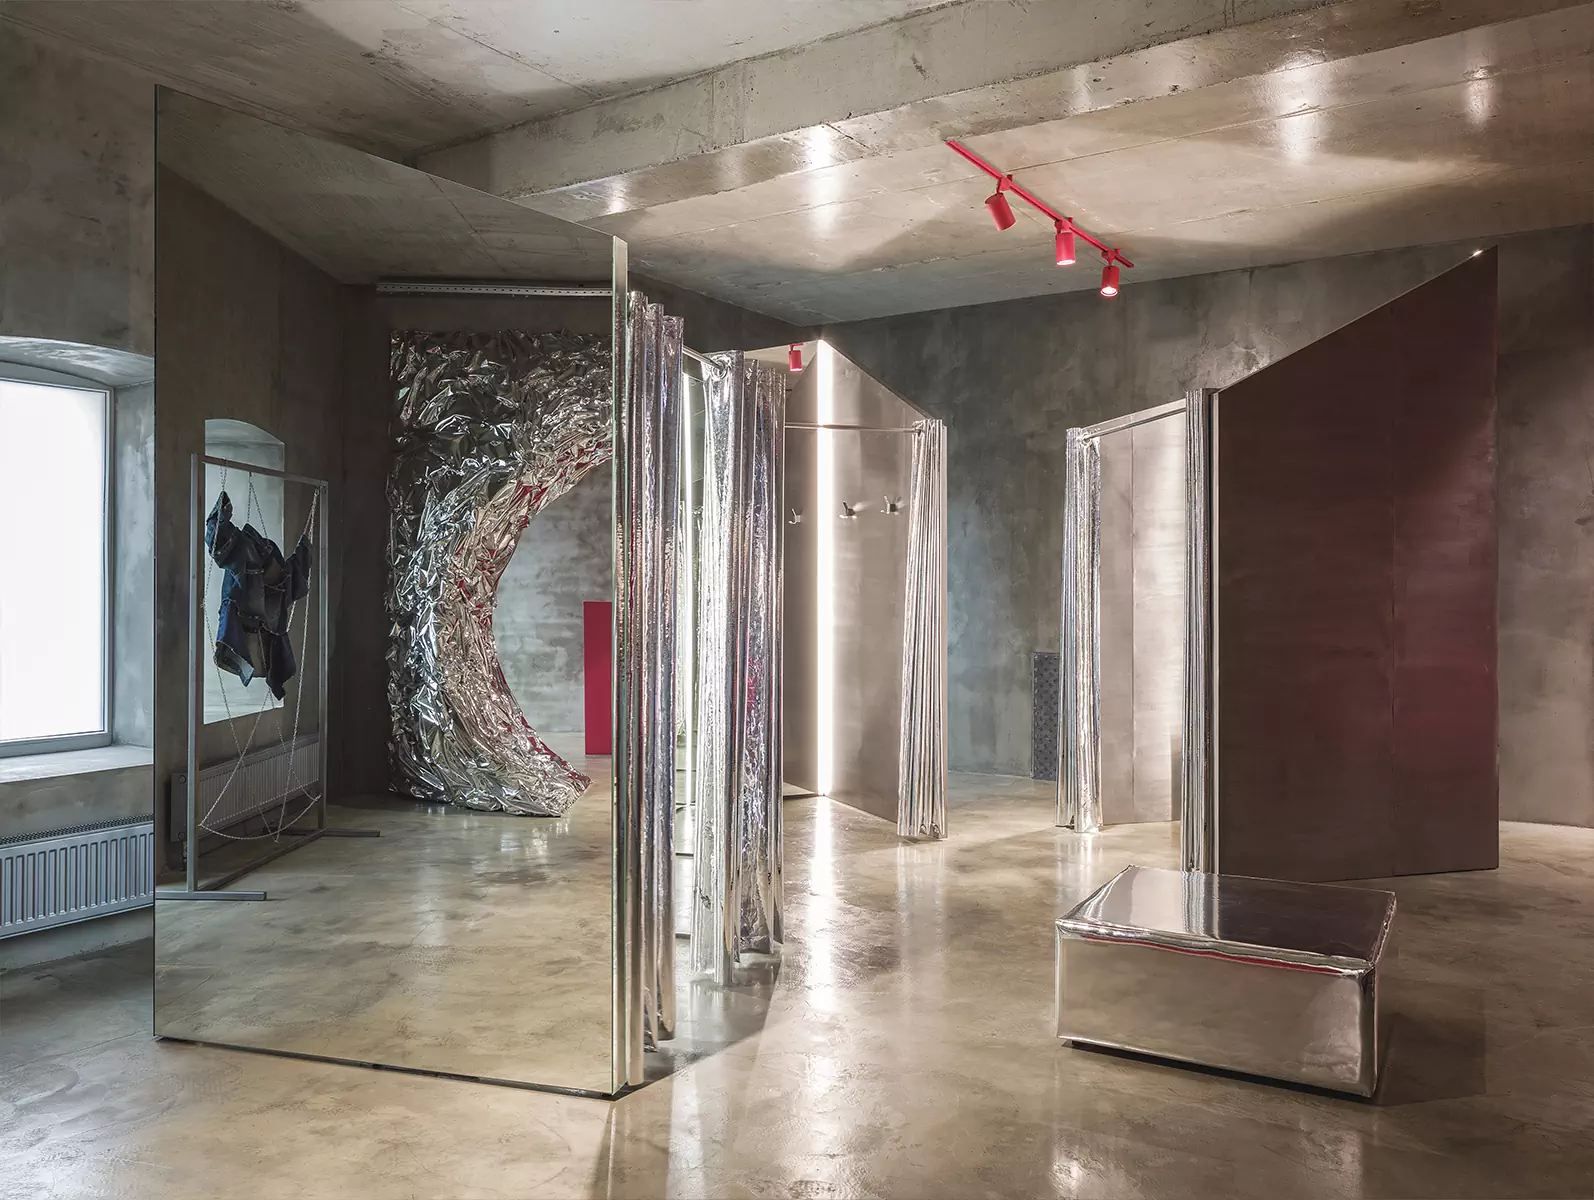 Скульптурная розовая лестница в интерьере казанского магазина одежды — проект бюро AR ARCHITECTS